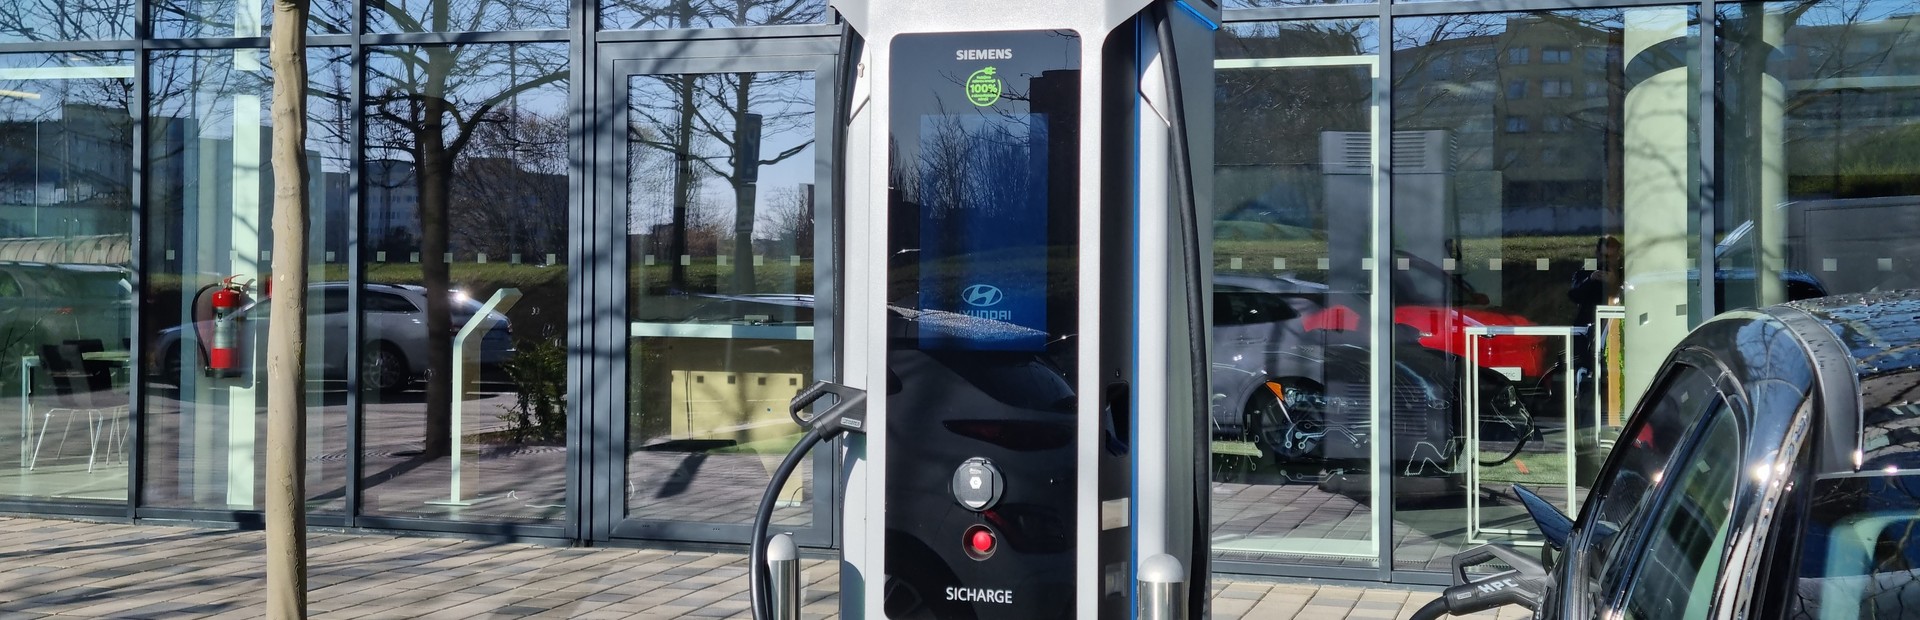 Siemens Sicharge D o výkonu 300 kW je nainstalována před centrem e-mobility Hyundai Electrified v pražských Stodůlkách.jpg